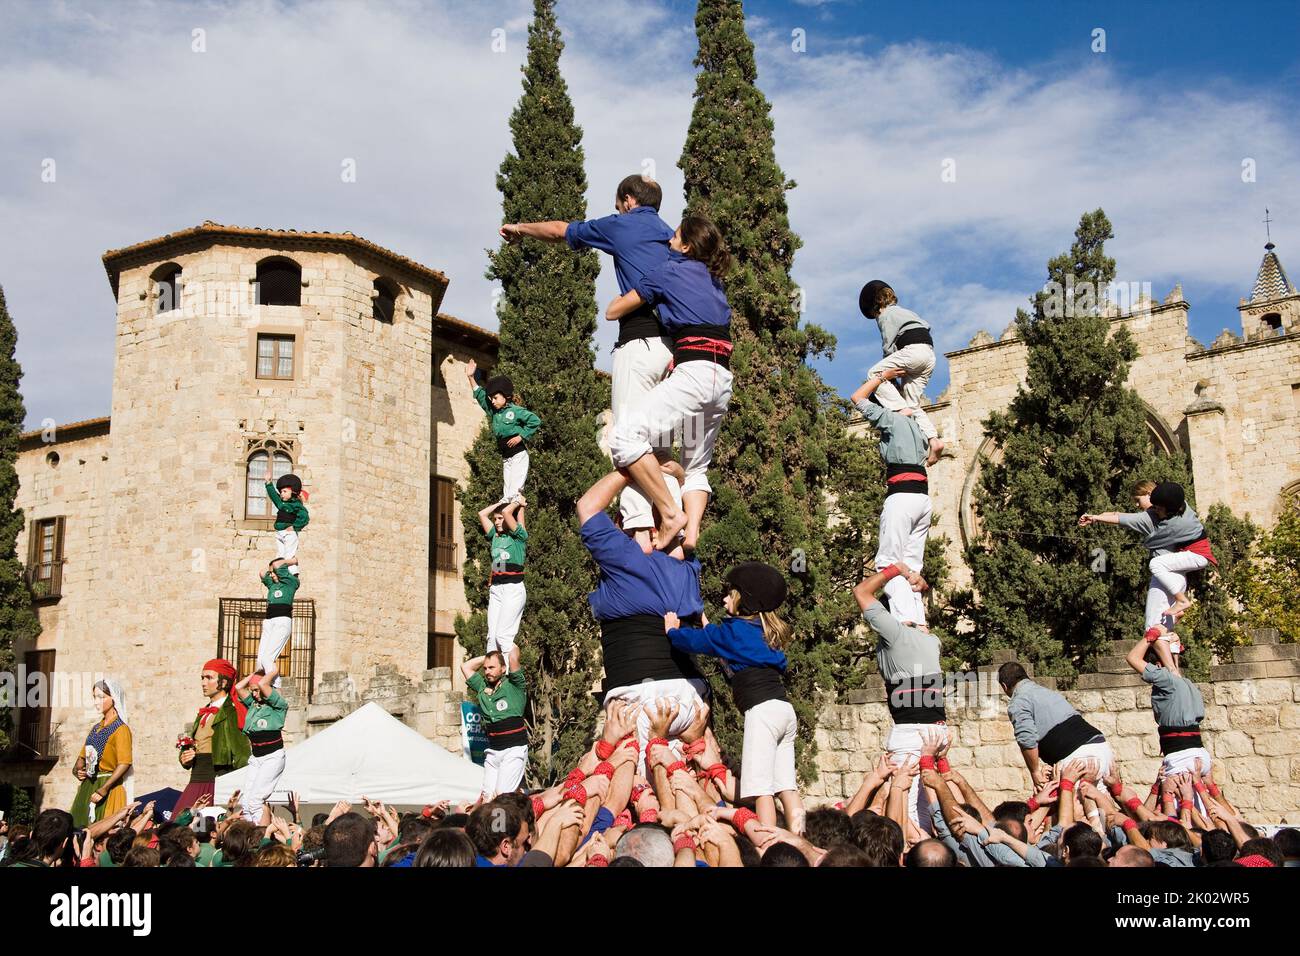 Castellers se présentant sur la Plaza Octavia à Sant Cugat del Valles dans la province de Barcelone en Catalogne Espagne Banque D'Images